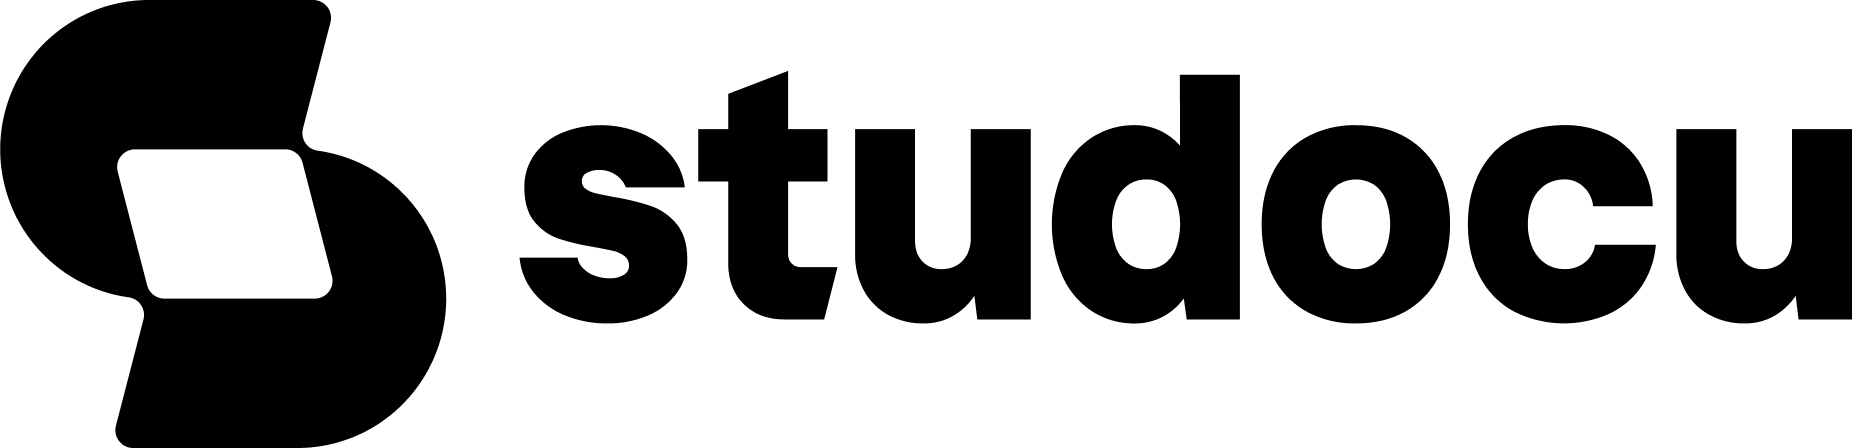 Studocu logo